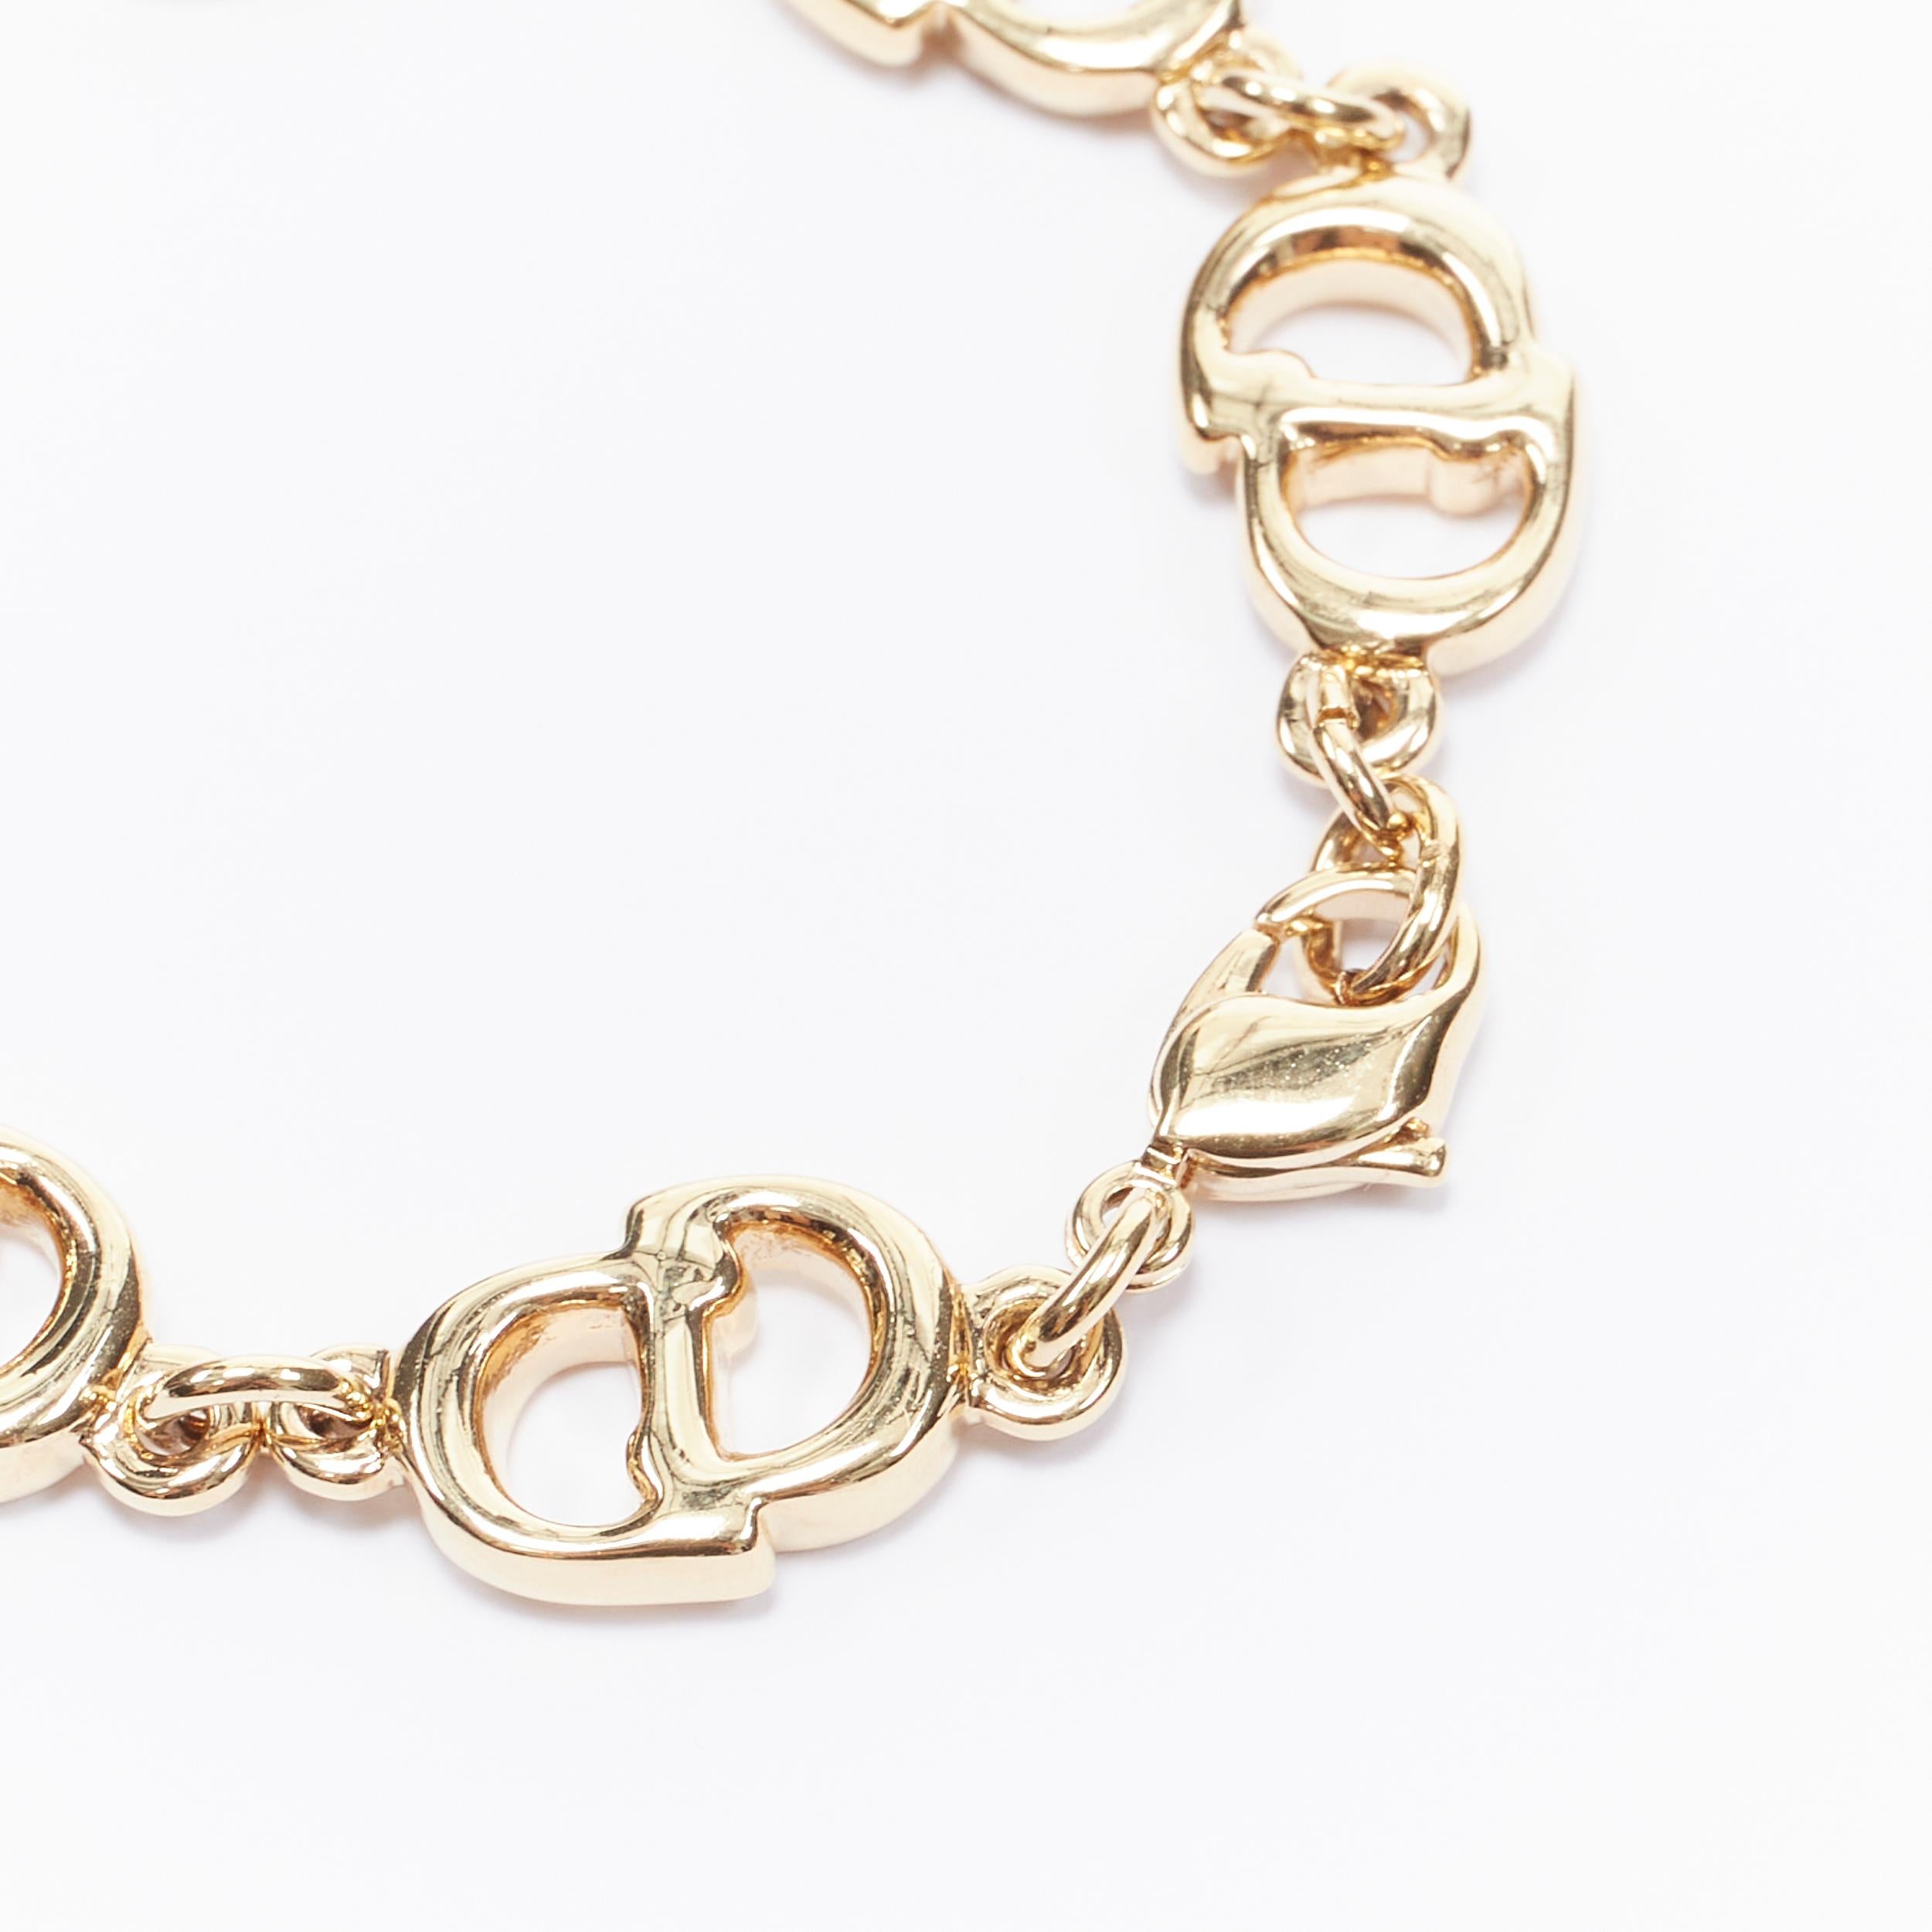 christian dior gold bracelet